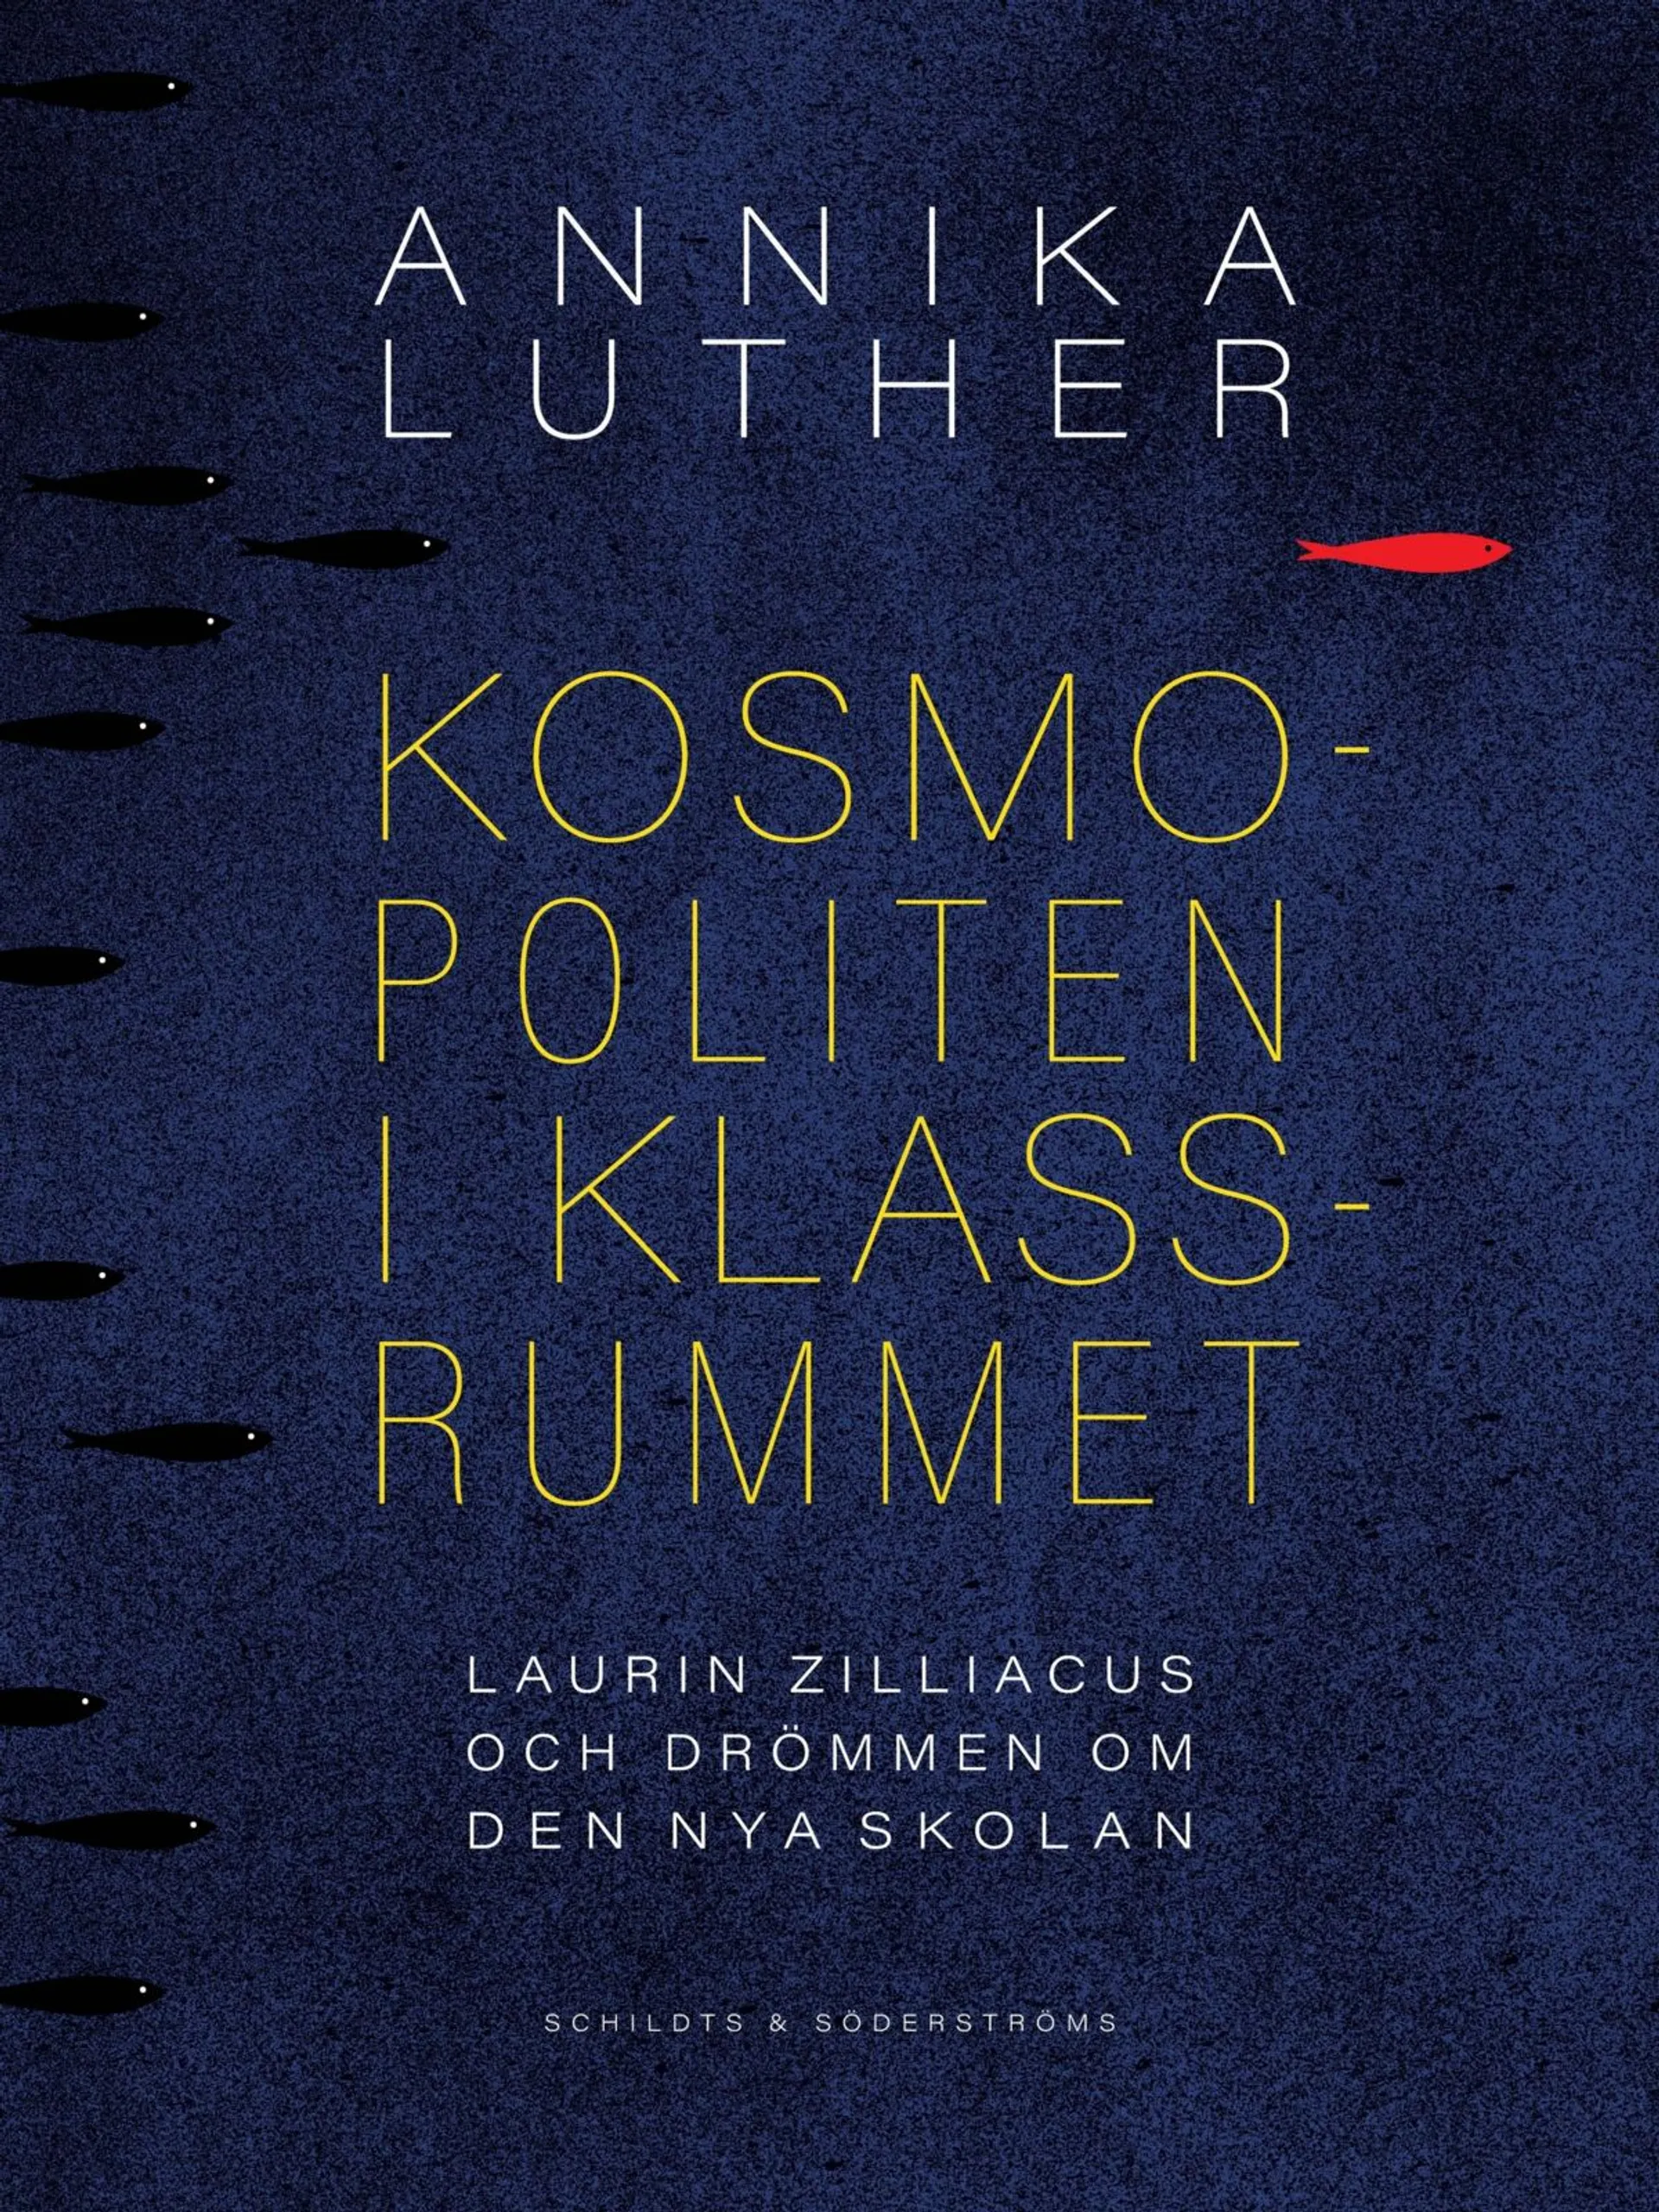 Luther, Kosmopoliten i klassrummet - Laurin Zilliacus och drömmen om den nya skolan